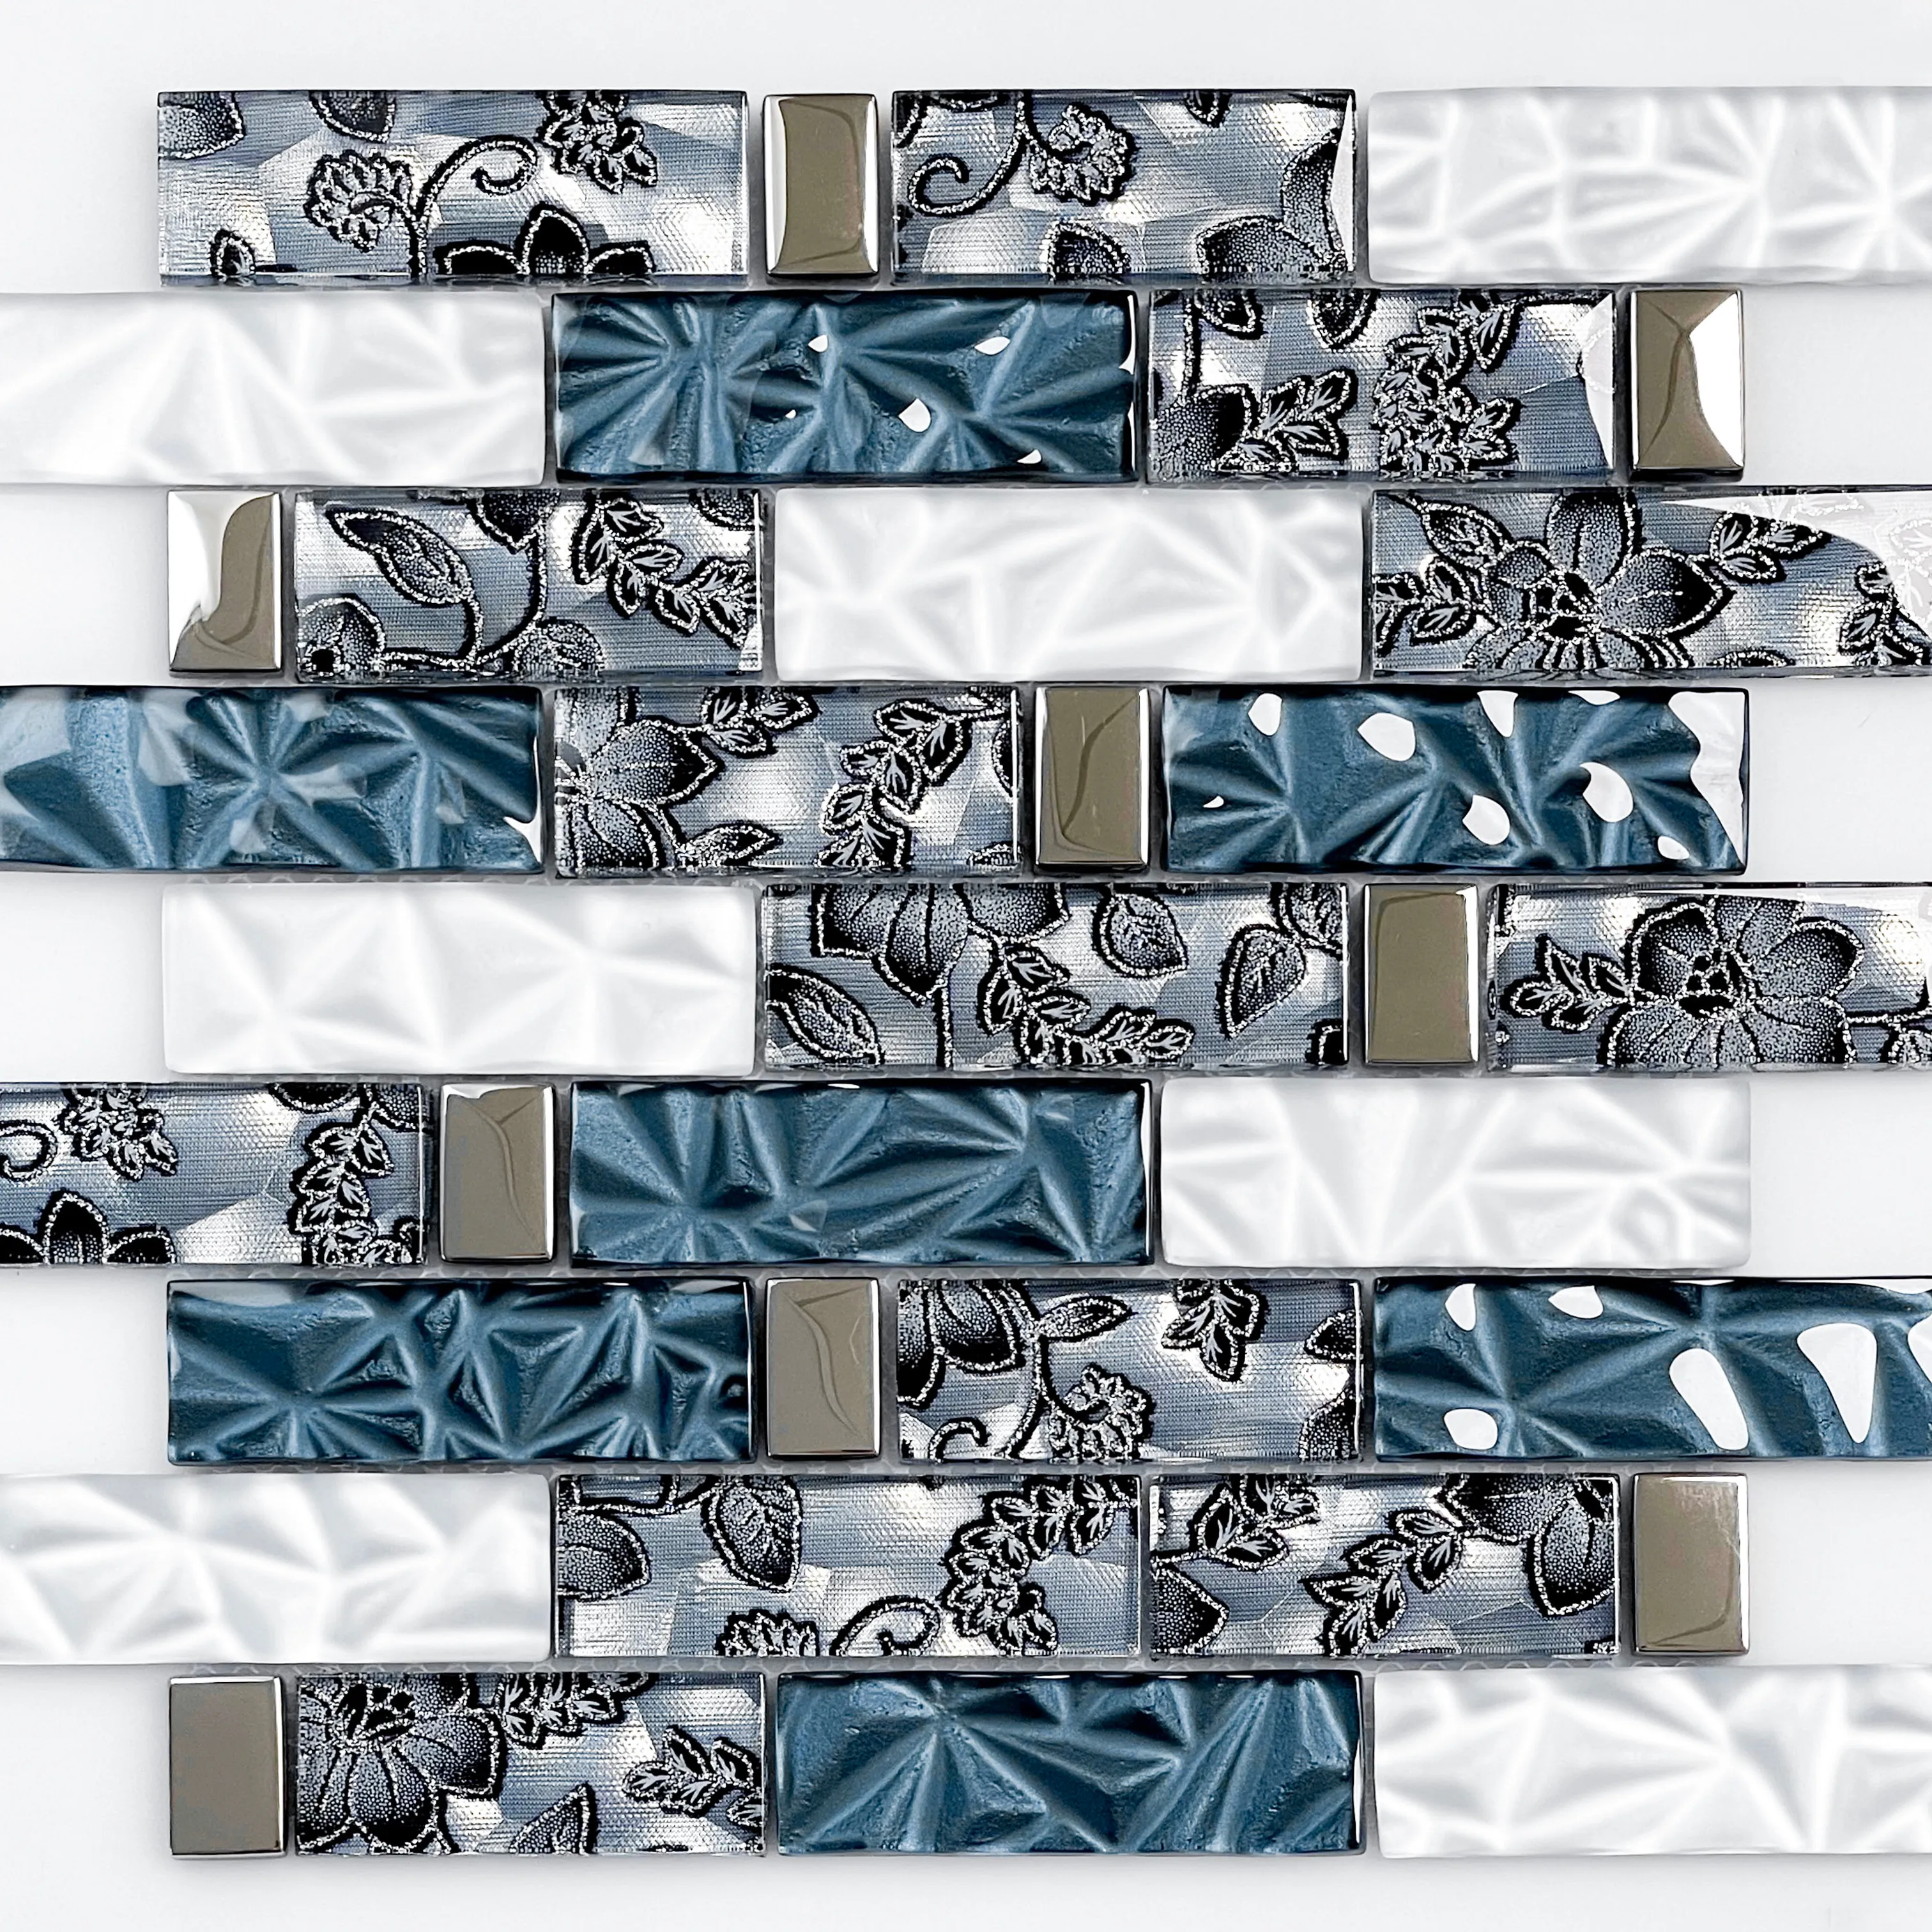 Yeni varış mavi 300x300mm mutfak duvar karosu moda tasarım kristal cam mozaik çini